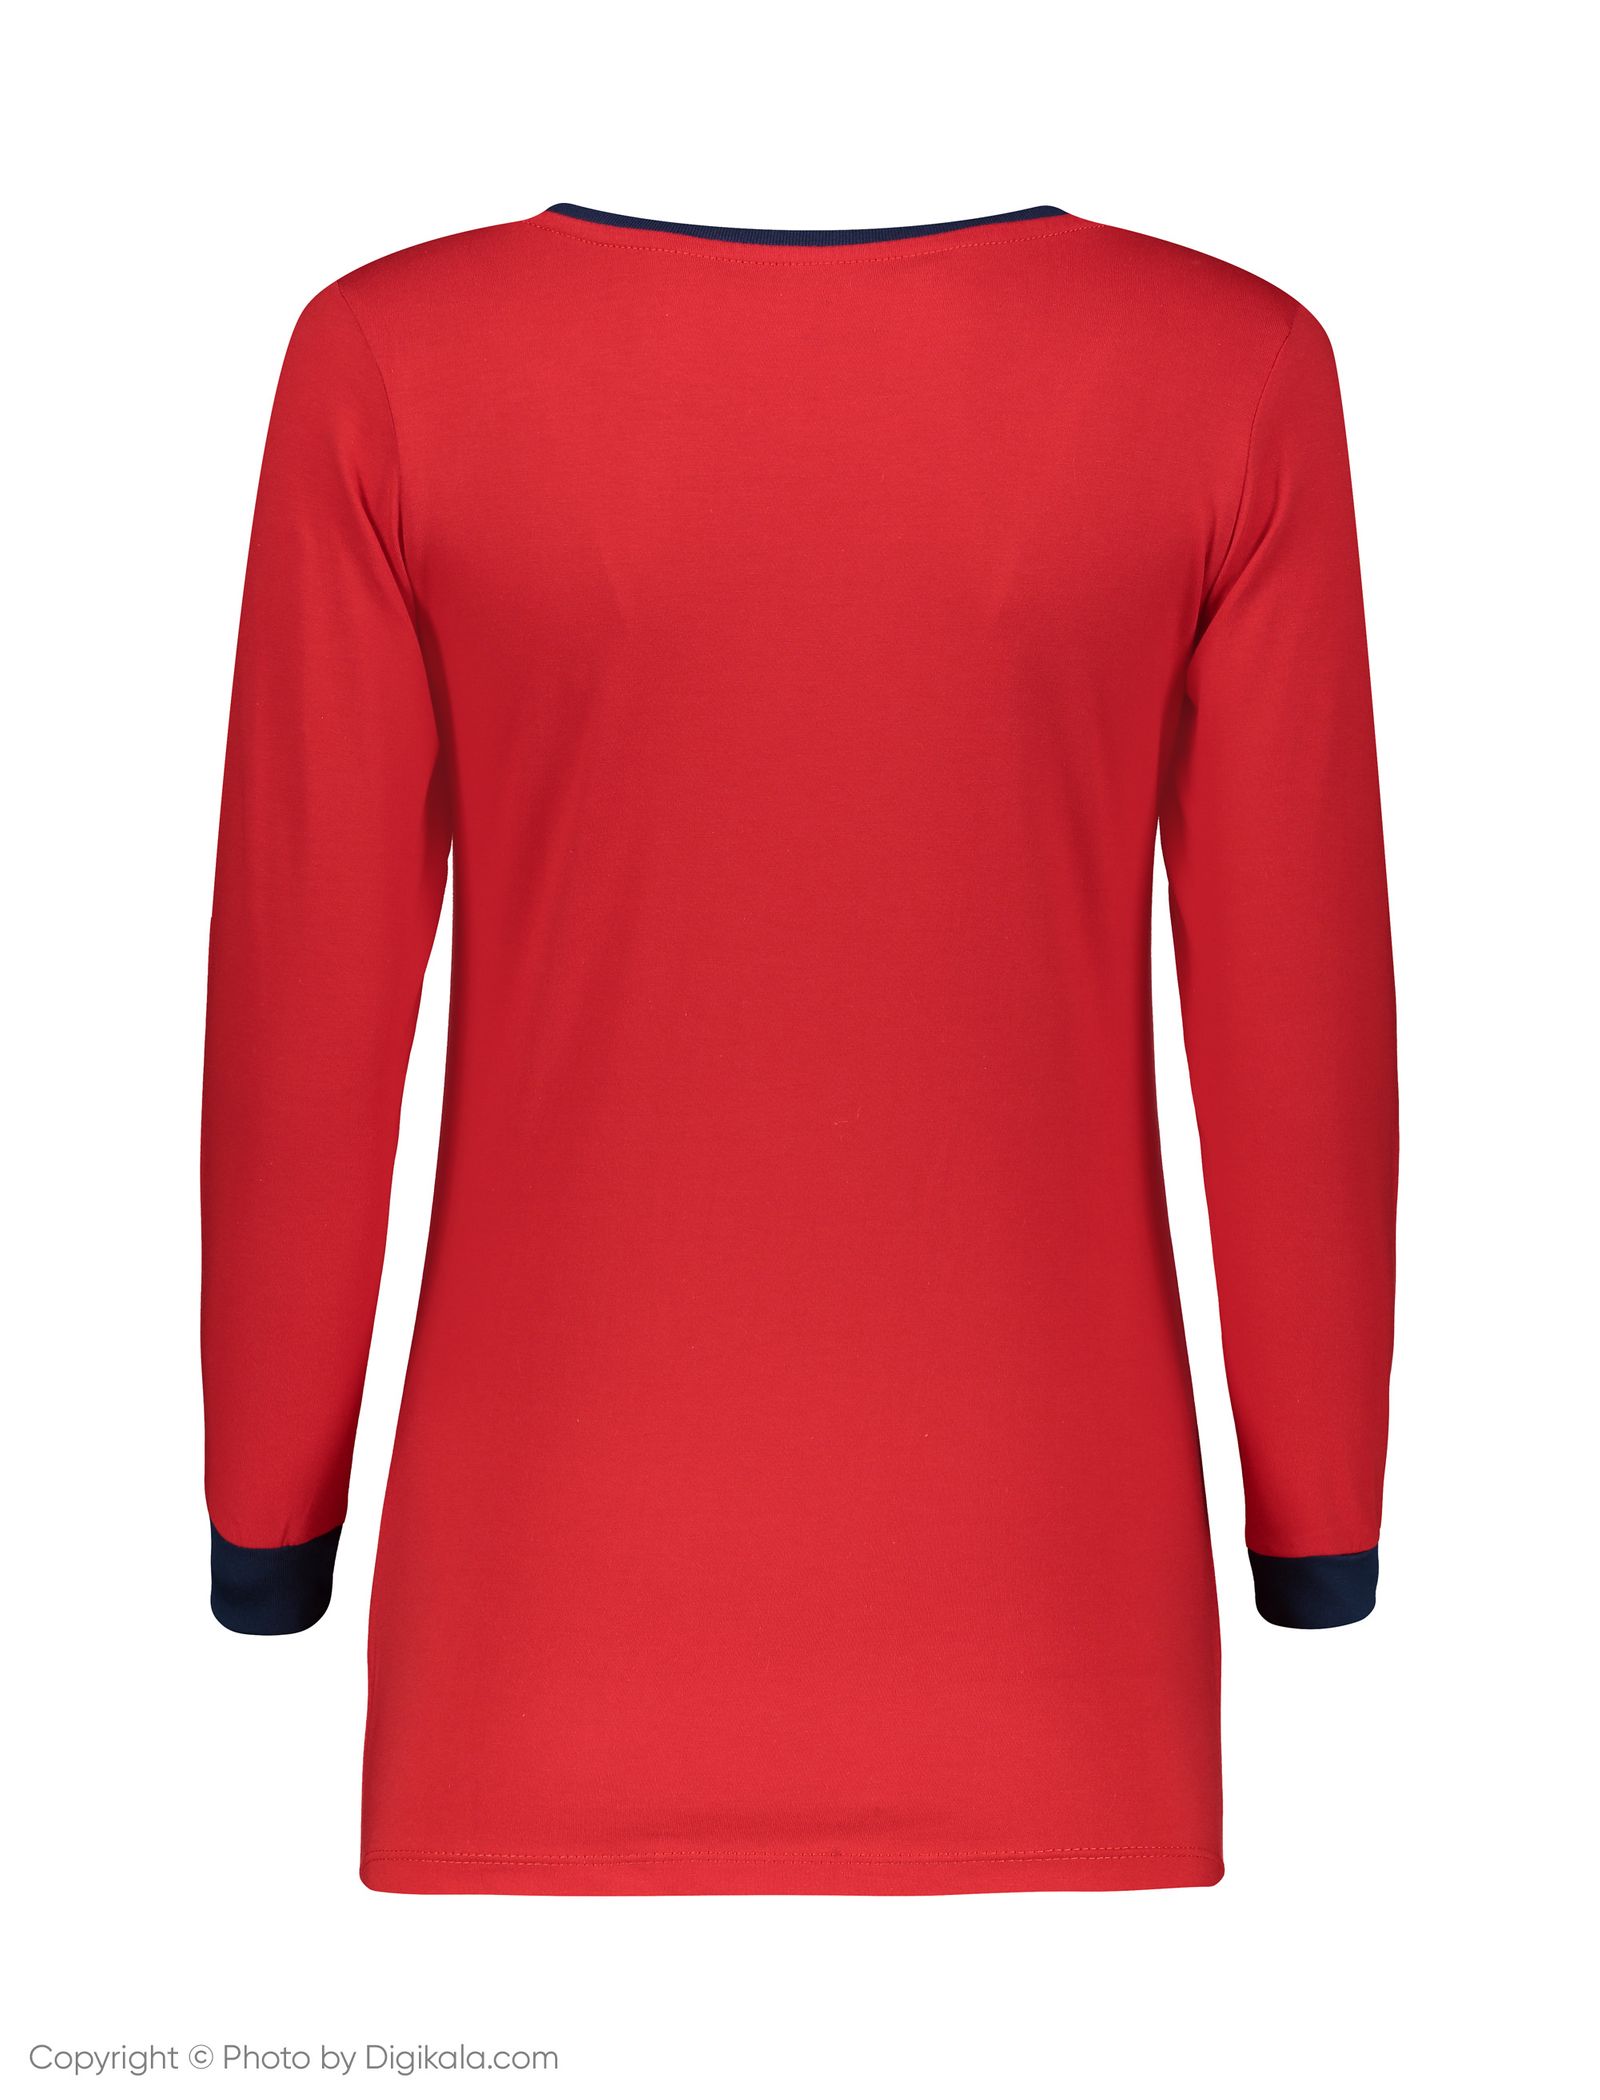 ست تی شرت و شلوار راحتی زنانه ناربن مدل 1521167-72 - قرمز - 5